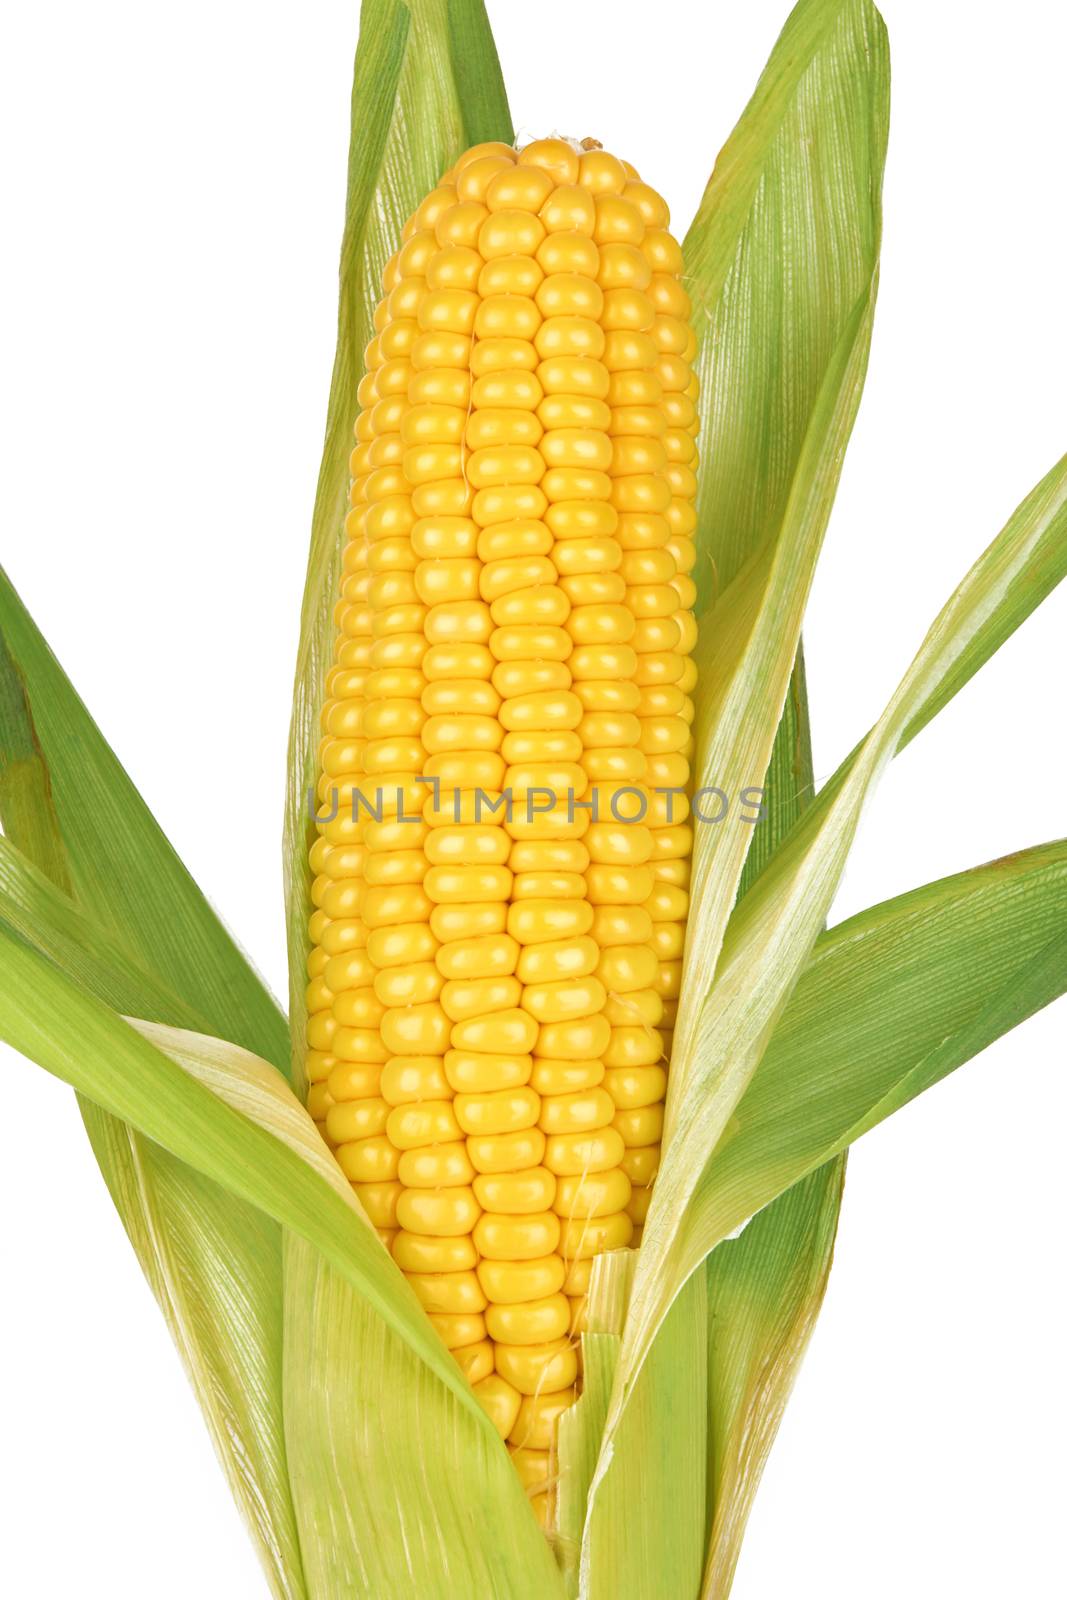 corn by pioneer111